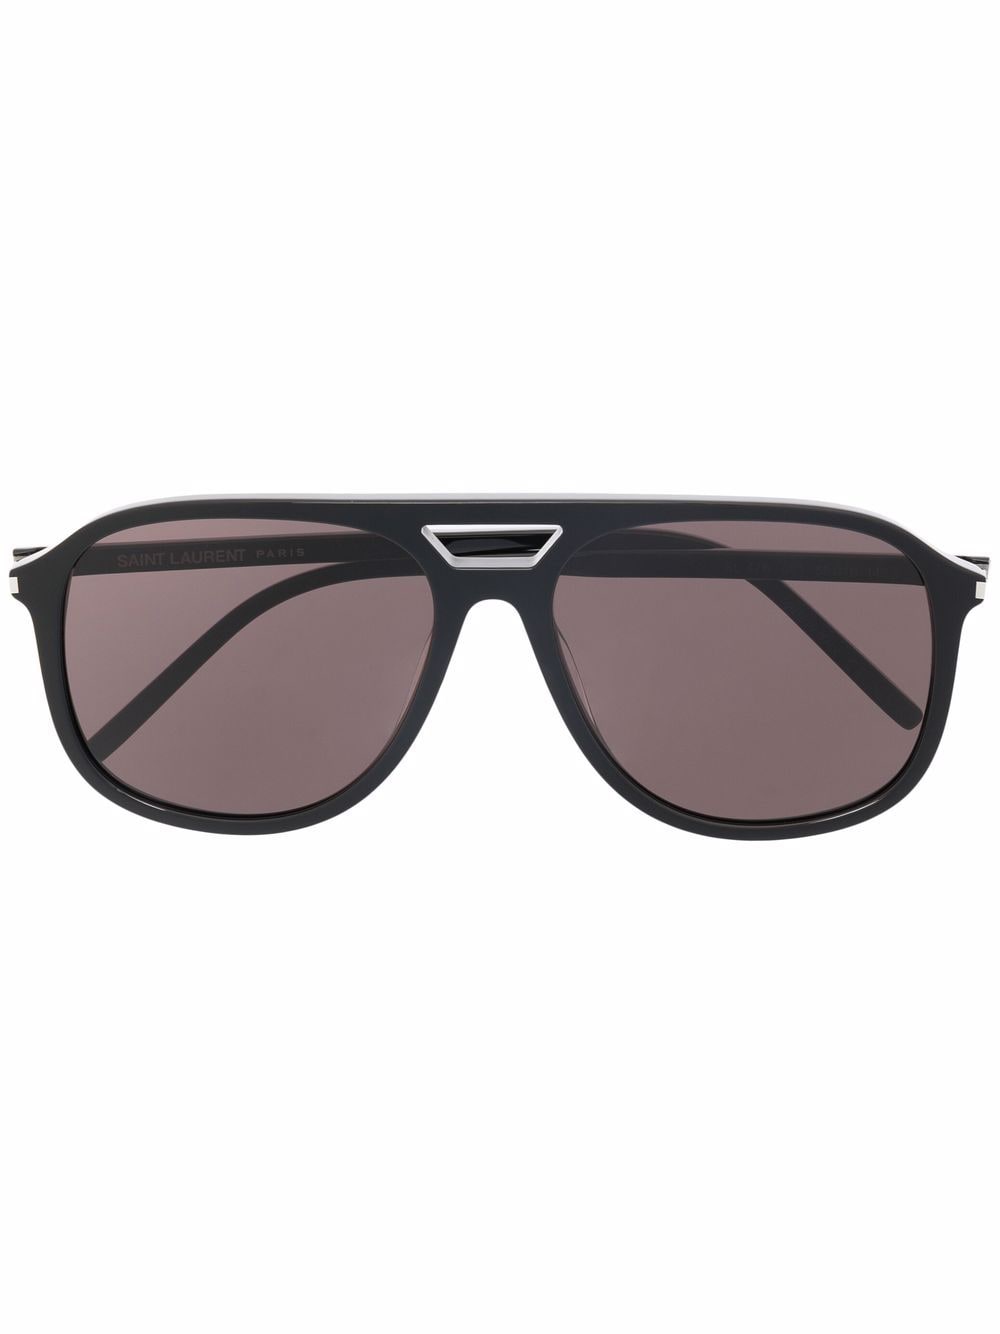 фото Saint laurent eyewear солнцезащитные очки-авиаторы с затемненными линзами